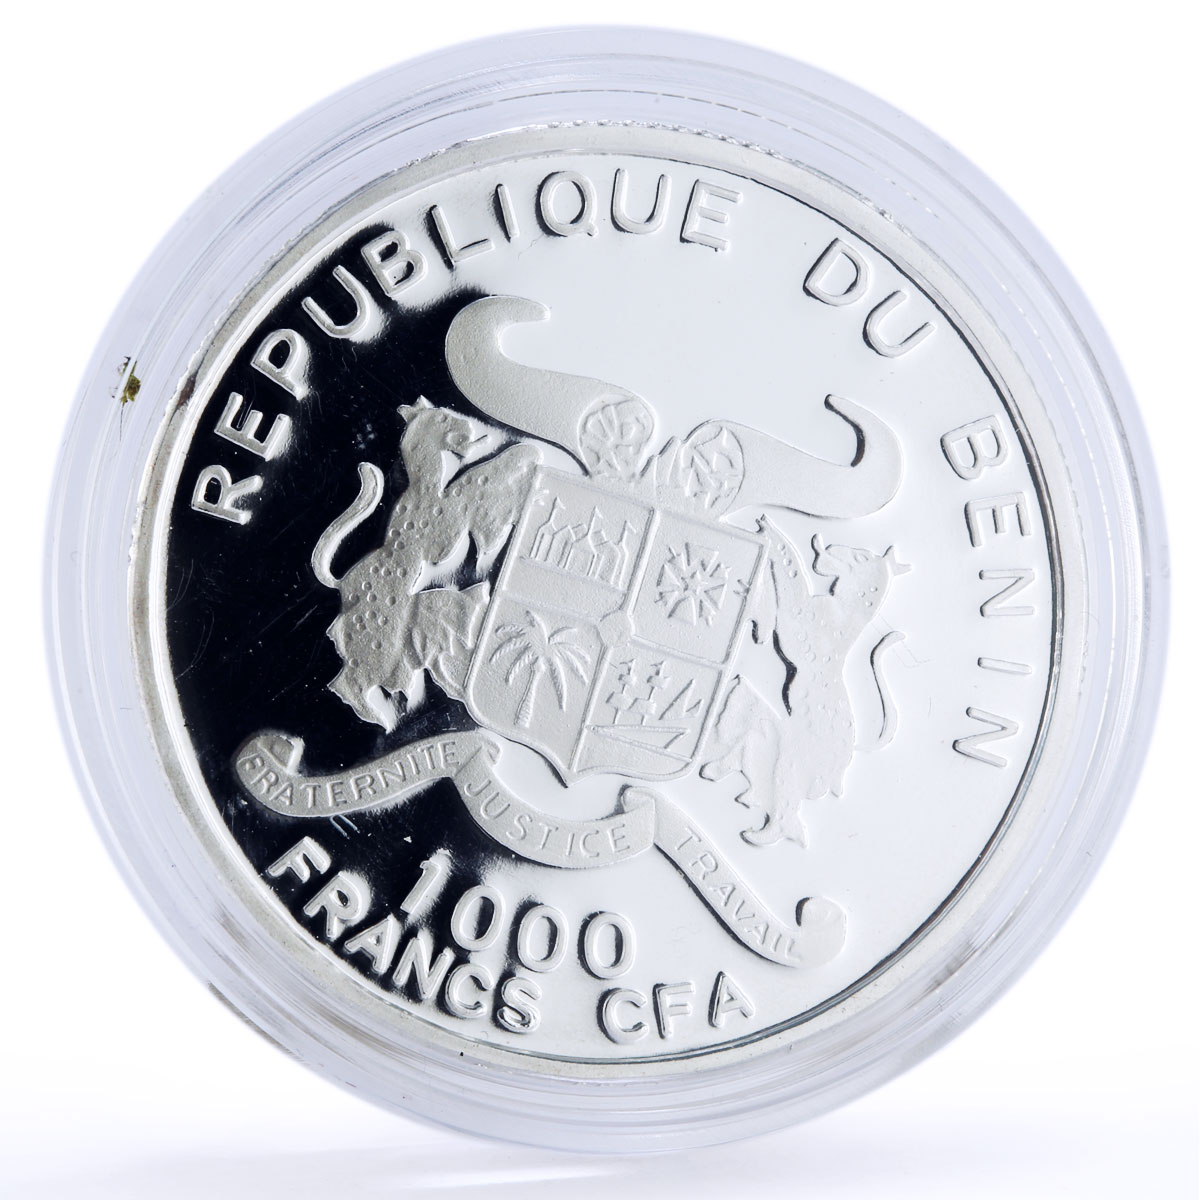 Benin 1000 francs Seafaring Santisima Trinidad Ship Compass silver coin 2010